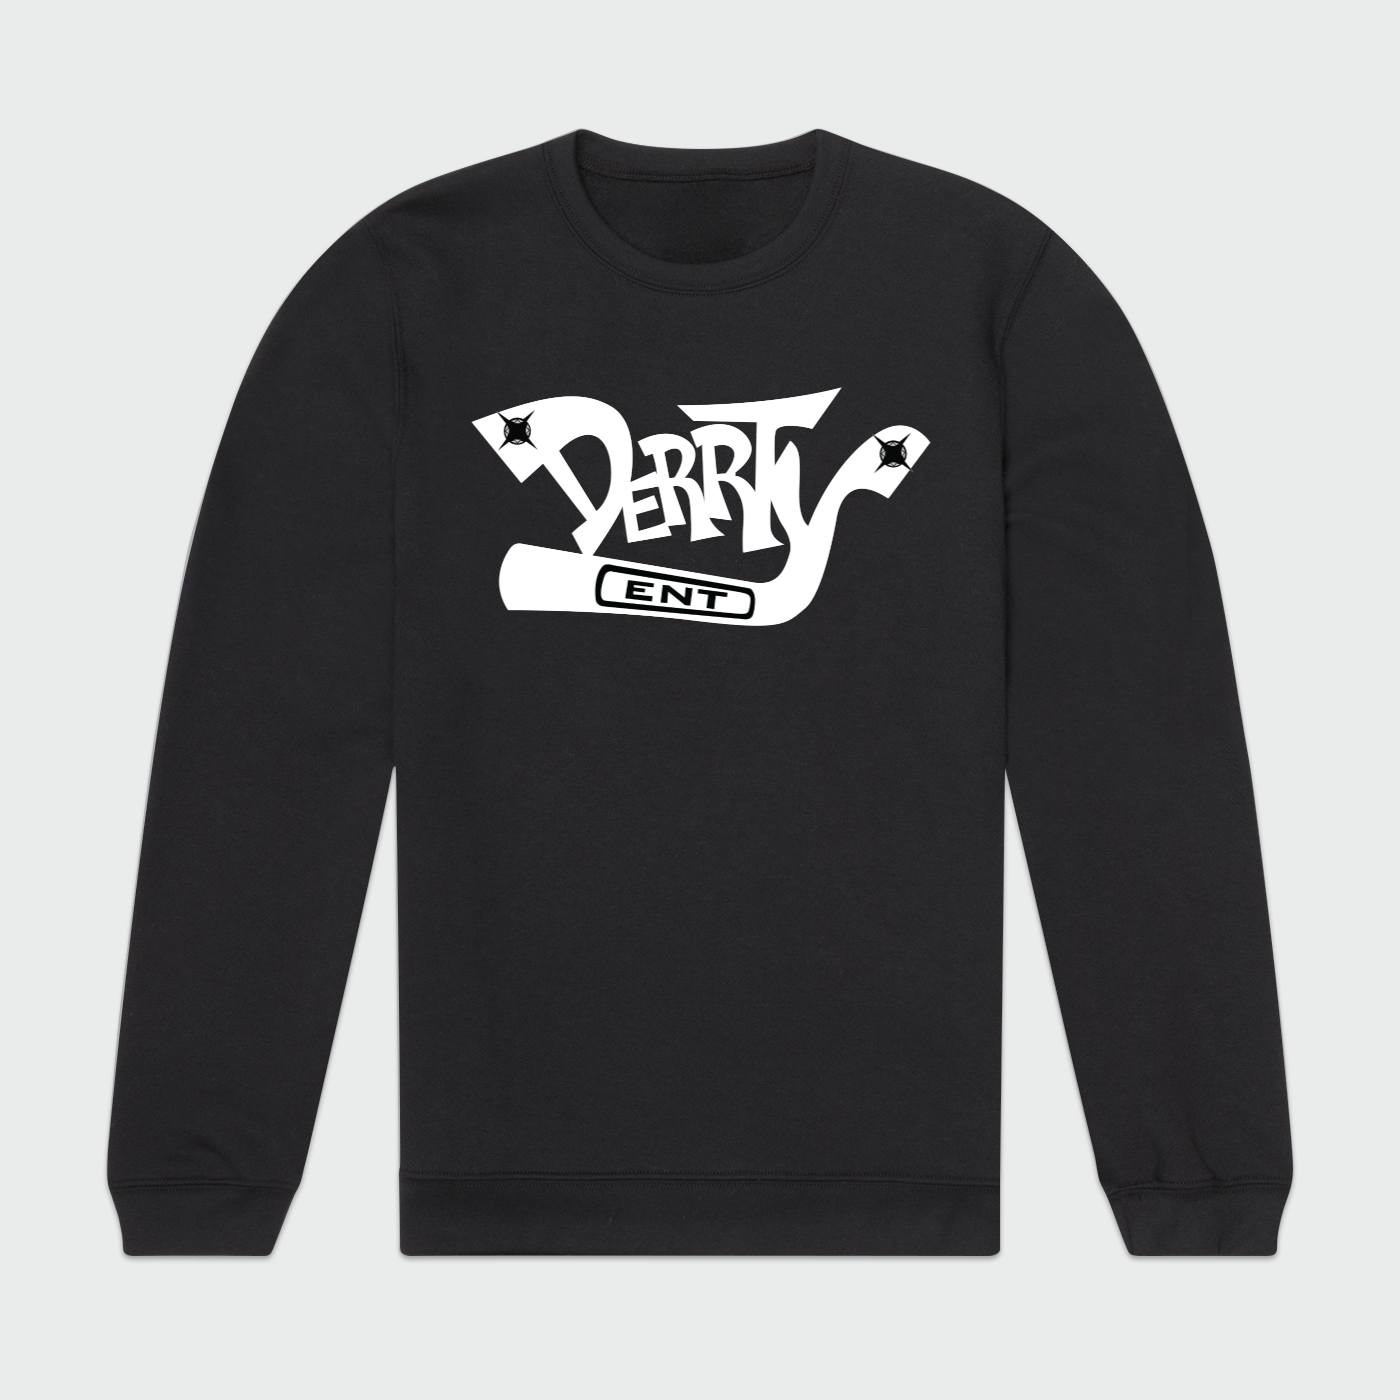 Derrty Ent Classic Logo Mens Crewneck Sweatshirt